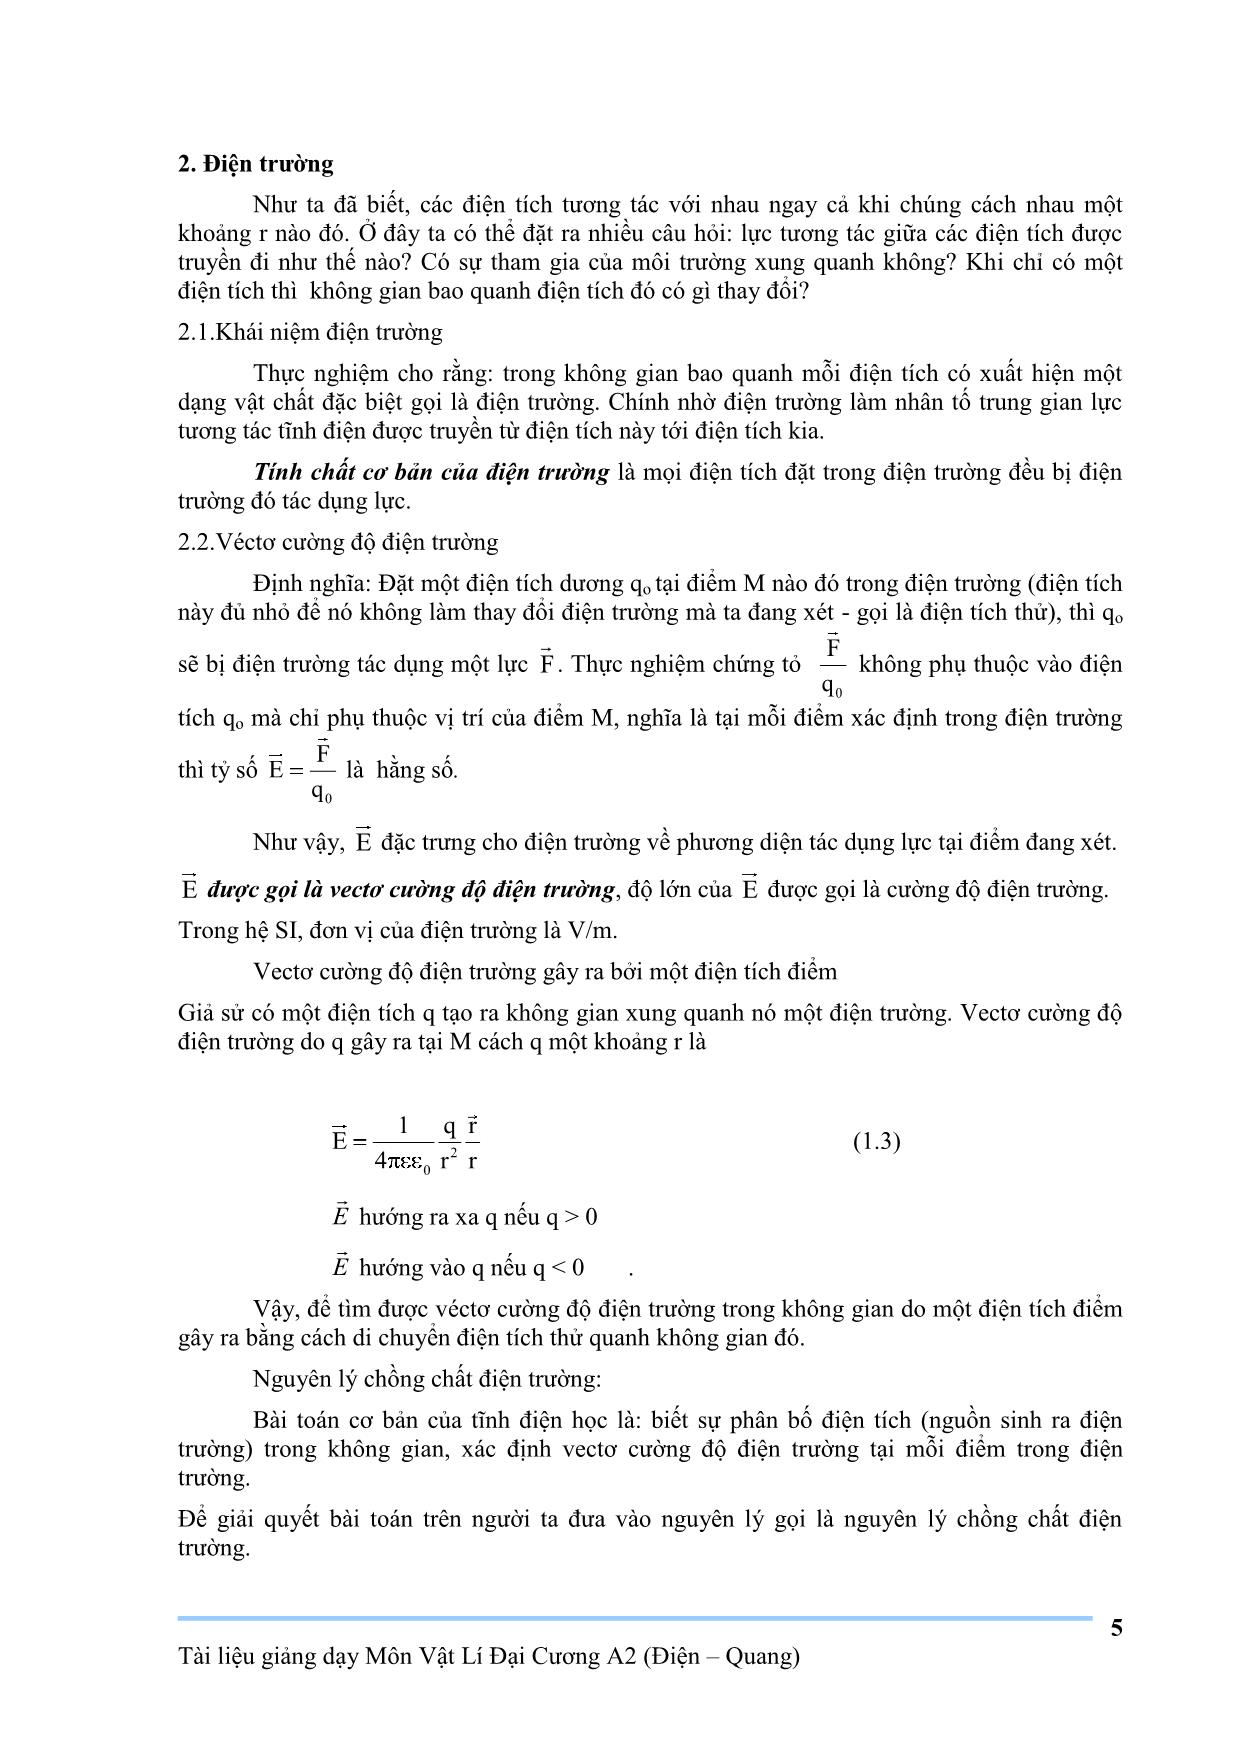 Giáo trình Vật lý đại cương A2 trang 5